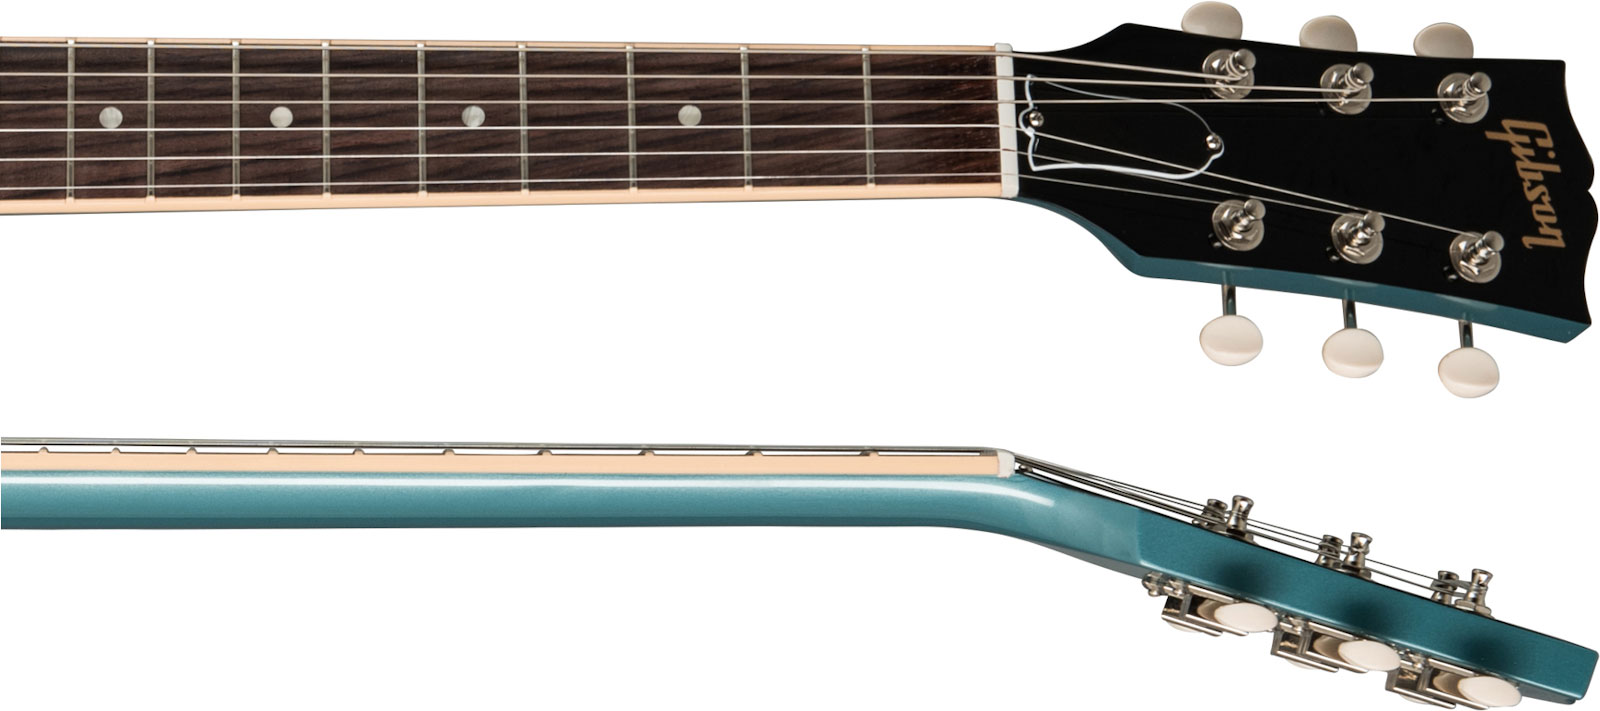 Gibson Sg Special Original P90 - Pelham Blue - Retro-Rock-E-Gitarre - Variation 3